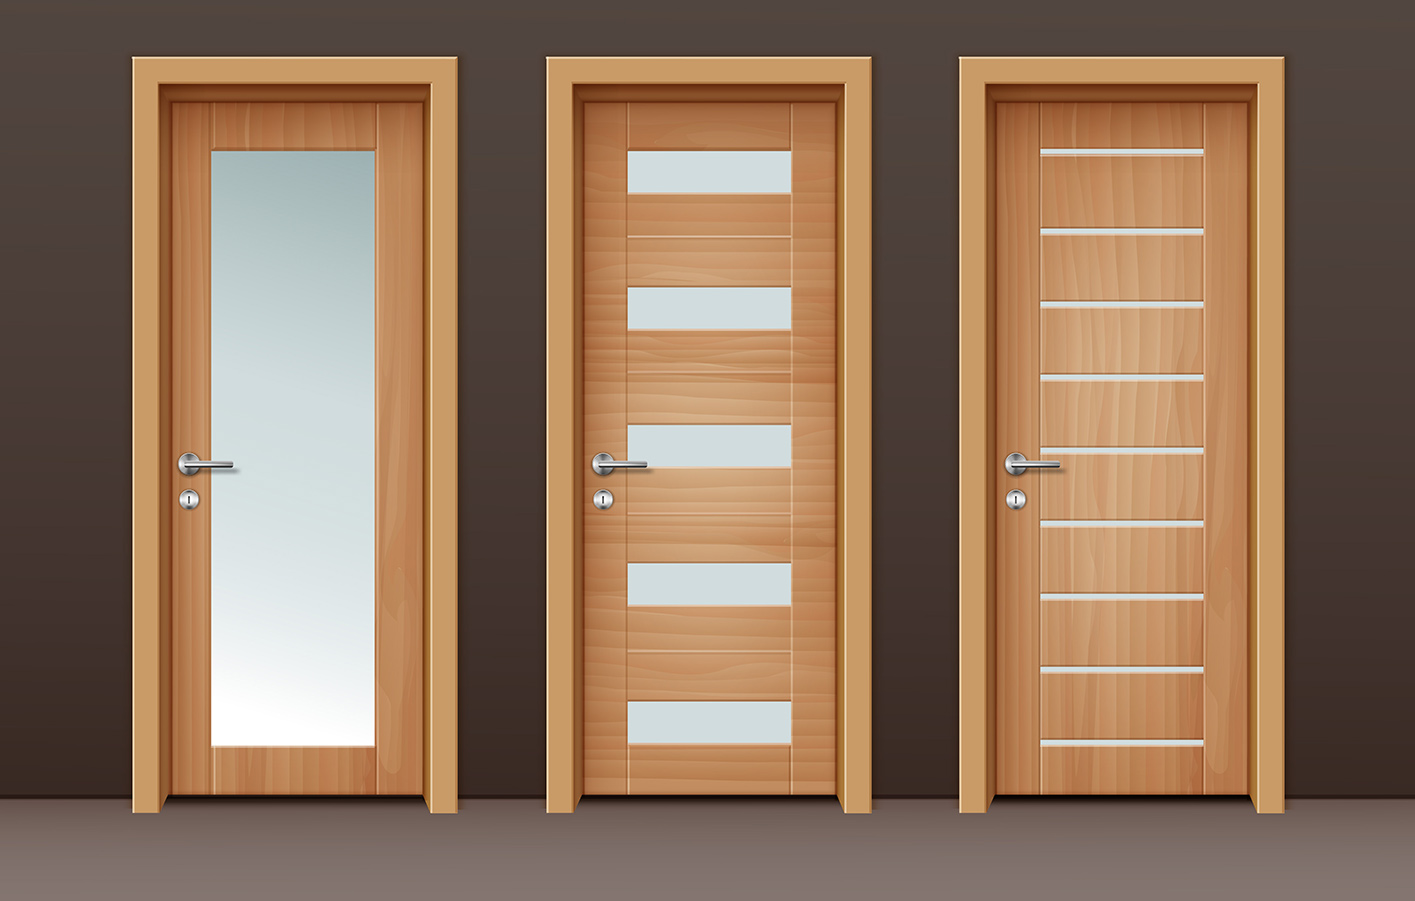 Drei Zimmertüren aus Holz mit Glaseinsätzen.